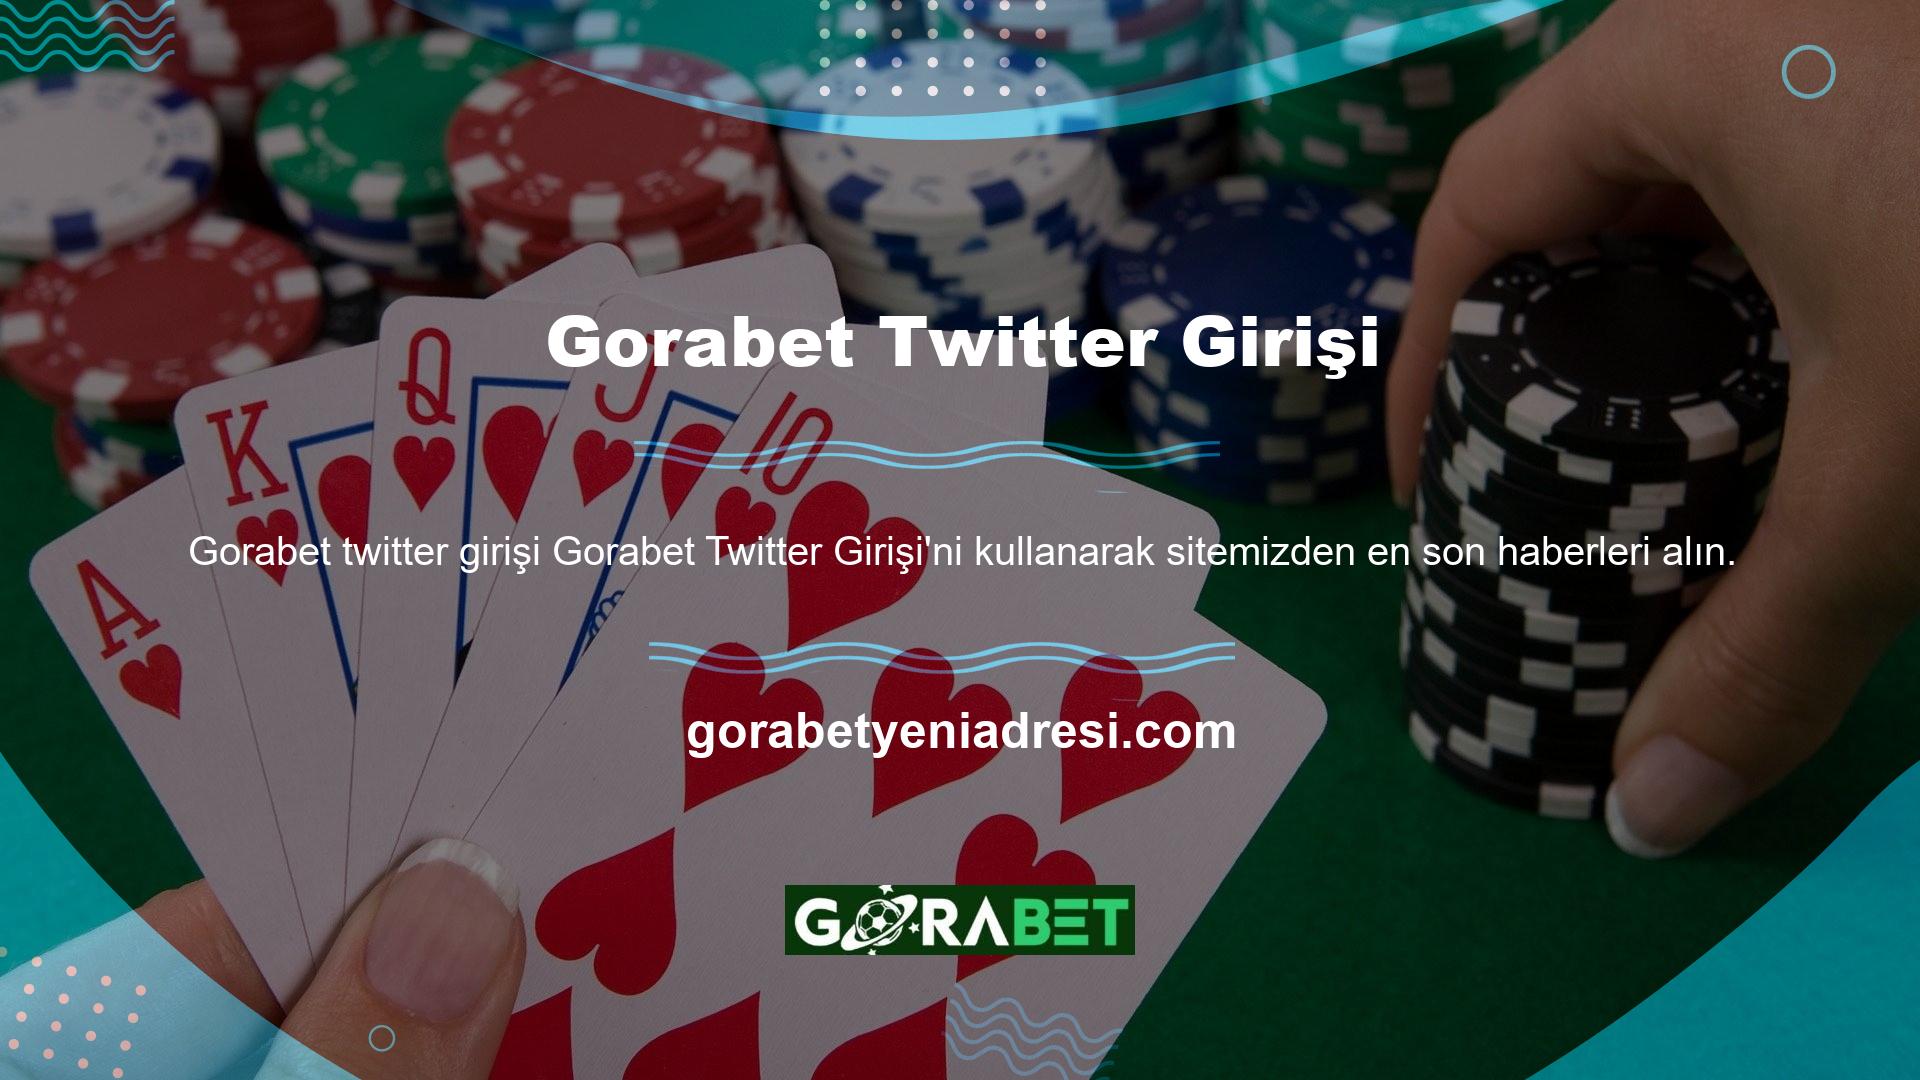 Gorabet Twitter Giriş Şirketi Gorabet Twitter sayfasını ziyaret ettiyseniz lütfen "Takip Et" düğmesine tıklayın